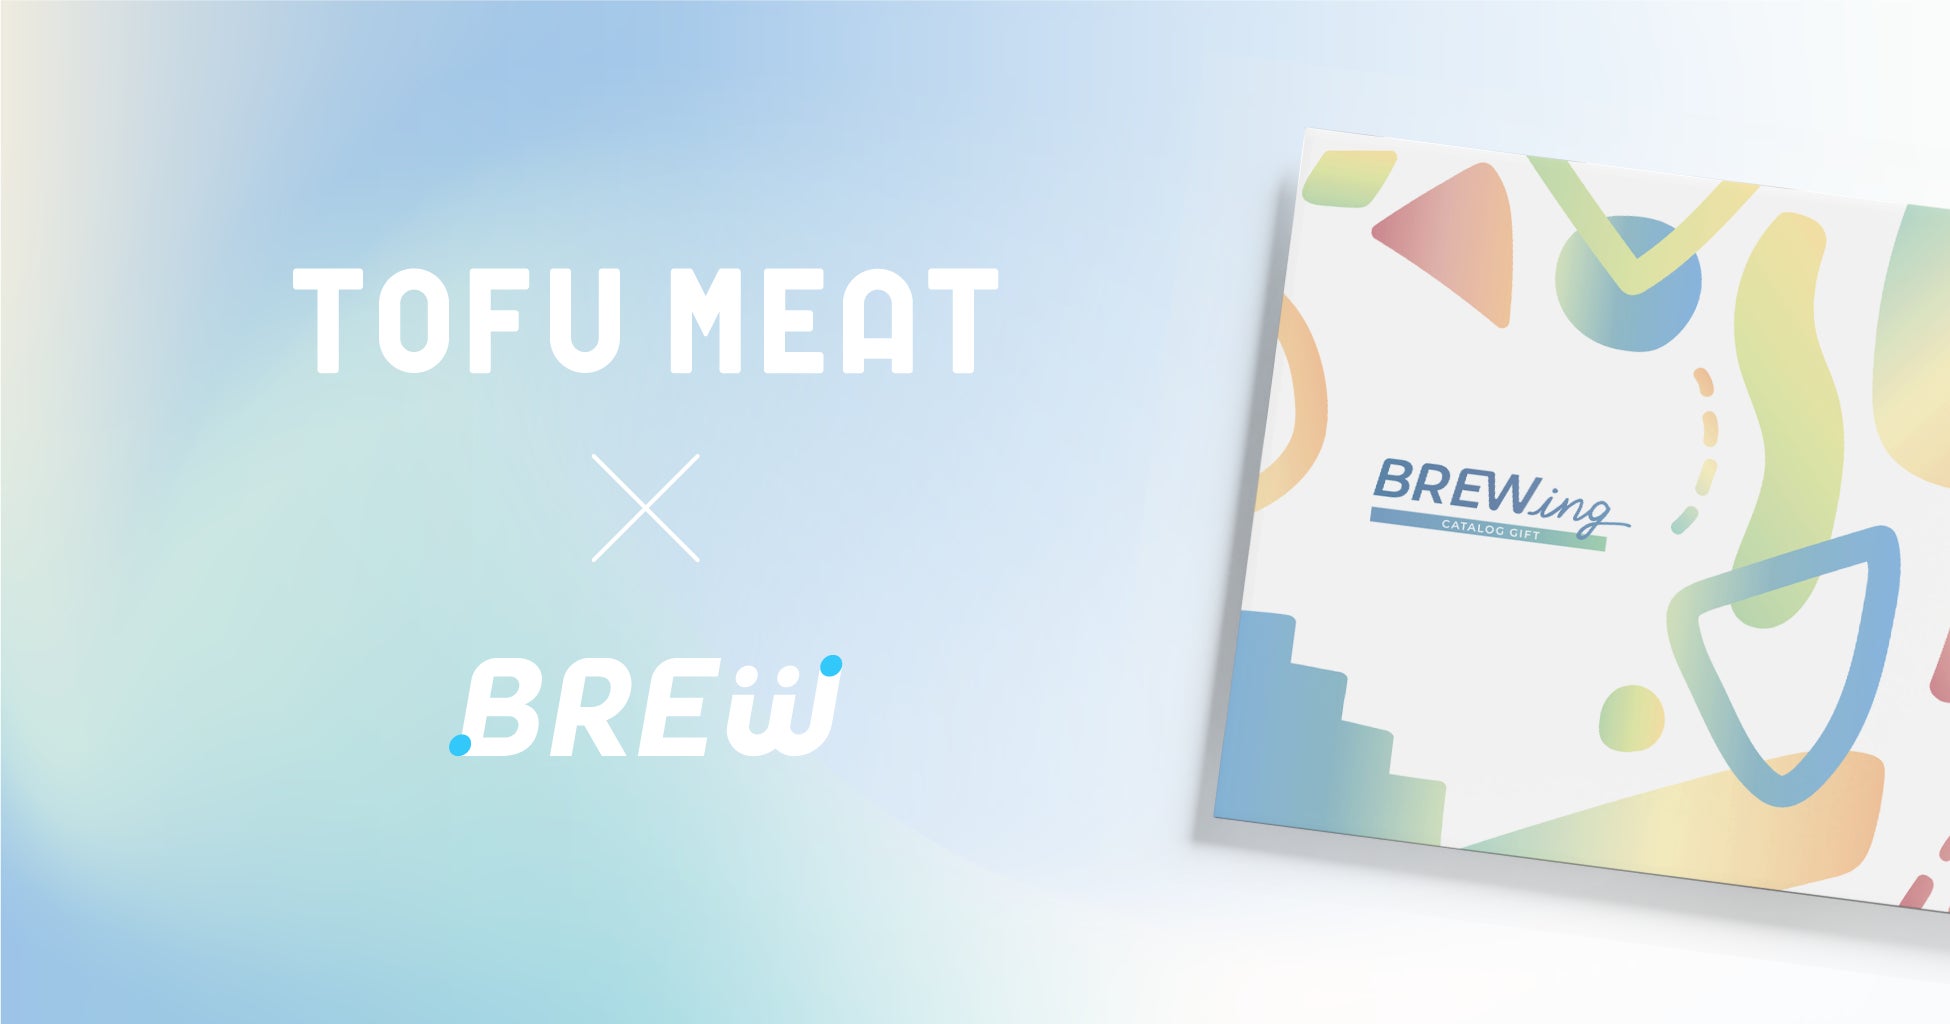 豆腐から作る新食材「TOFU MEAT（トーフミート）」がD2Cサービスを集めたカタログギフト「BREWing」に参画のサブ画像1